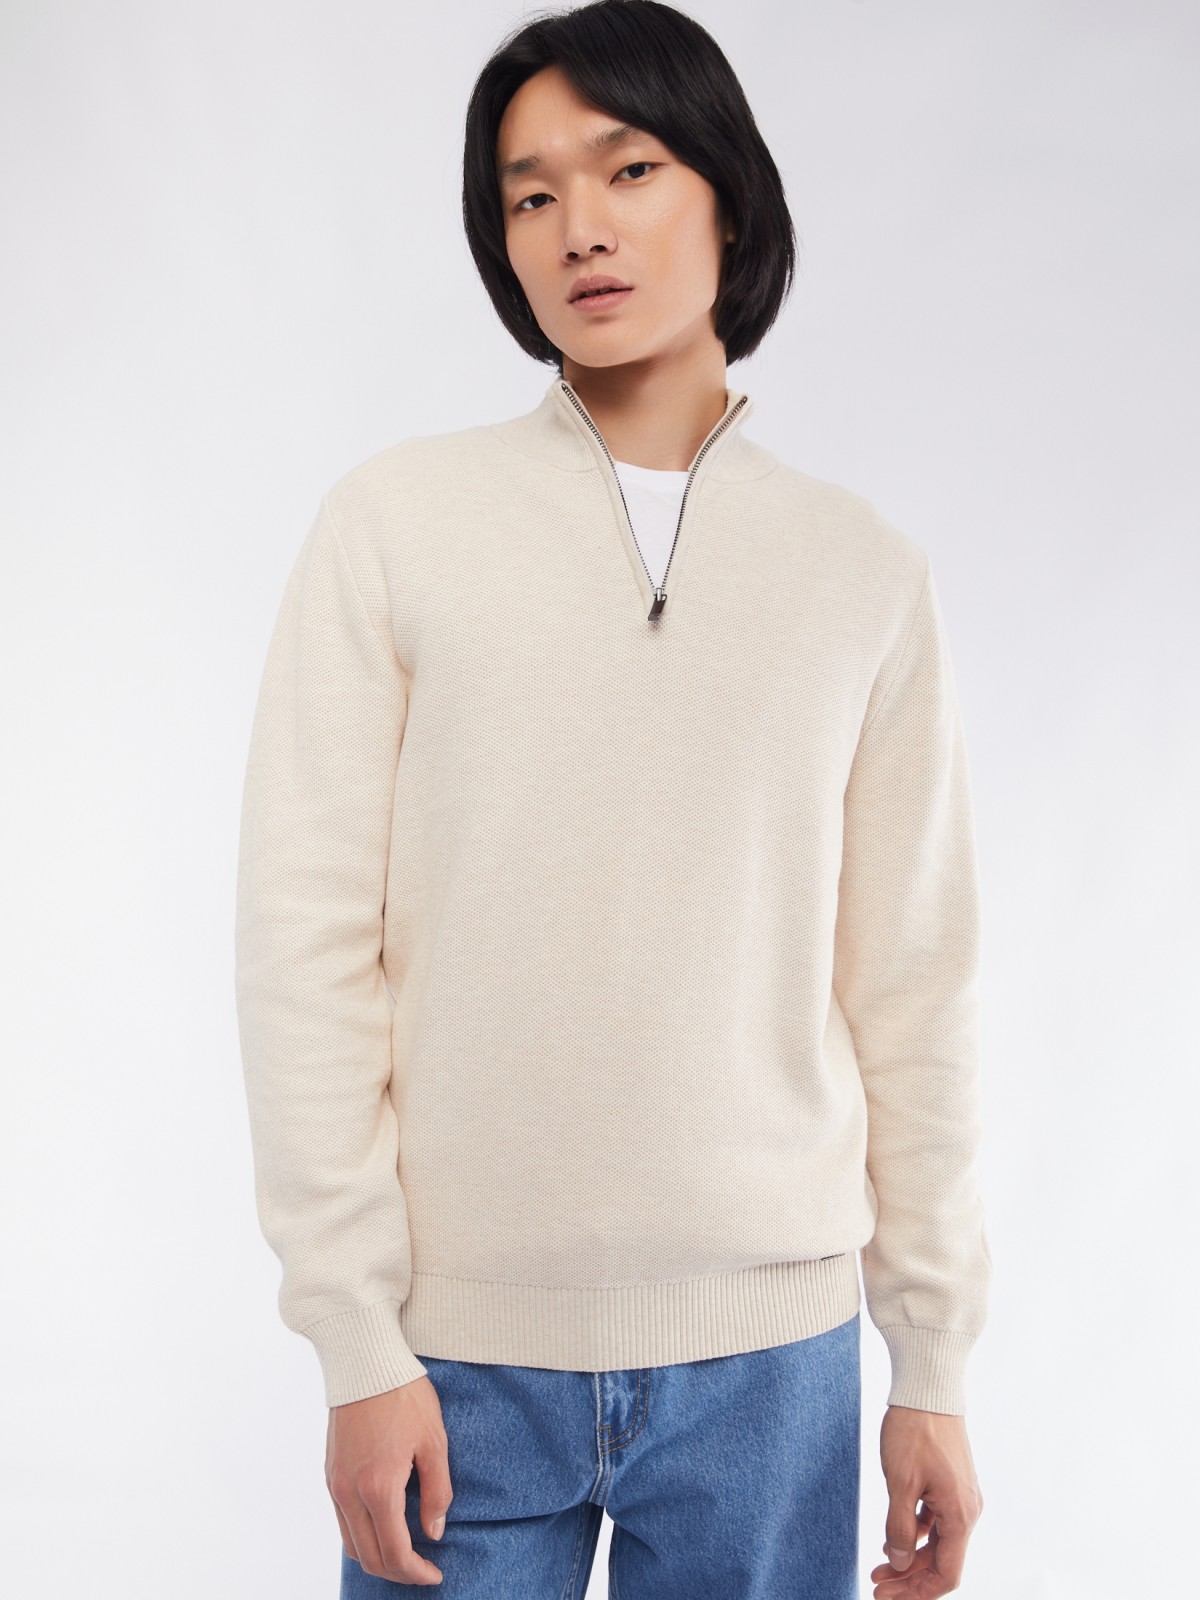 Тонкий трикотажный свитер с воротником на молнии zolla 014116801013, цвет бежевый, размер L